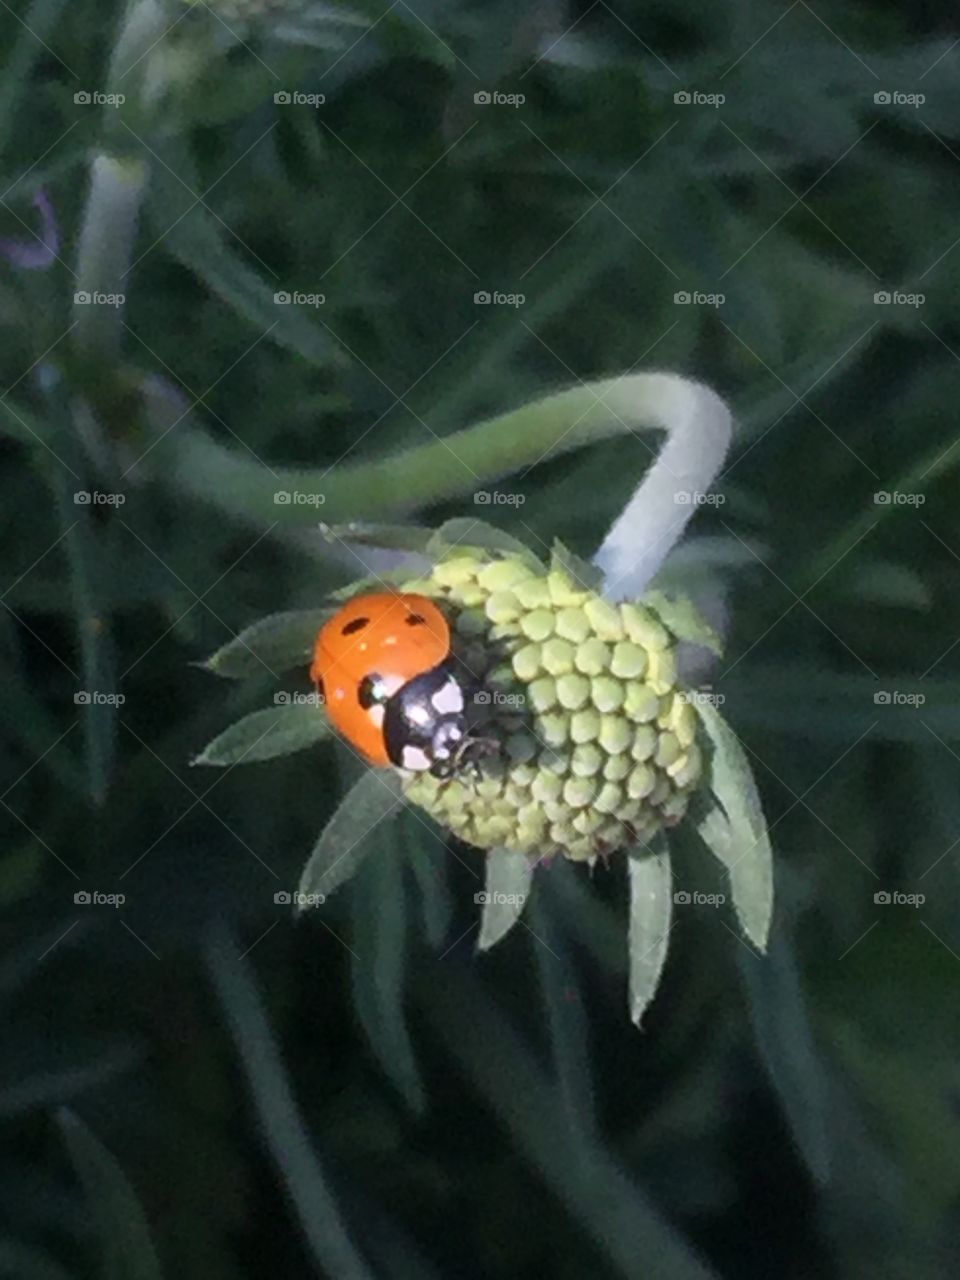 Ladybug on flowers 